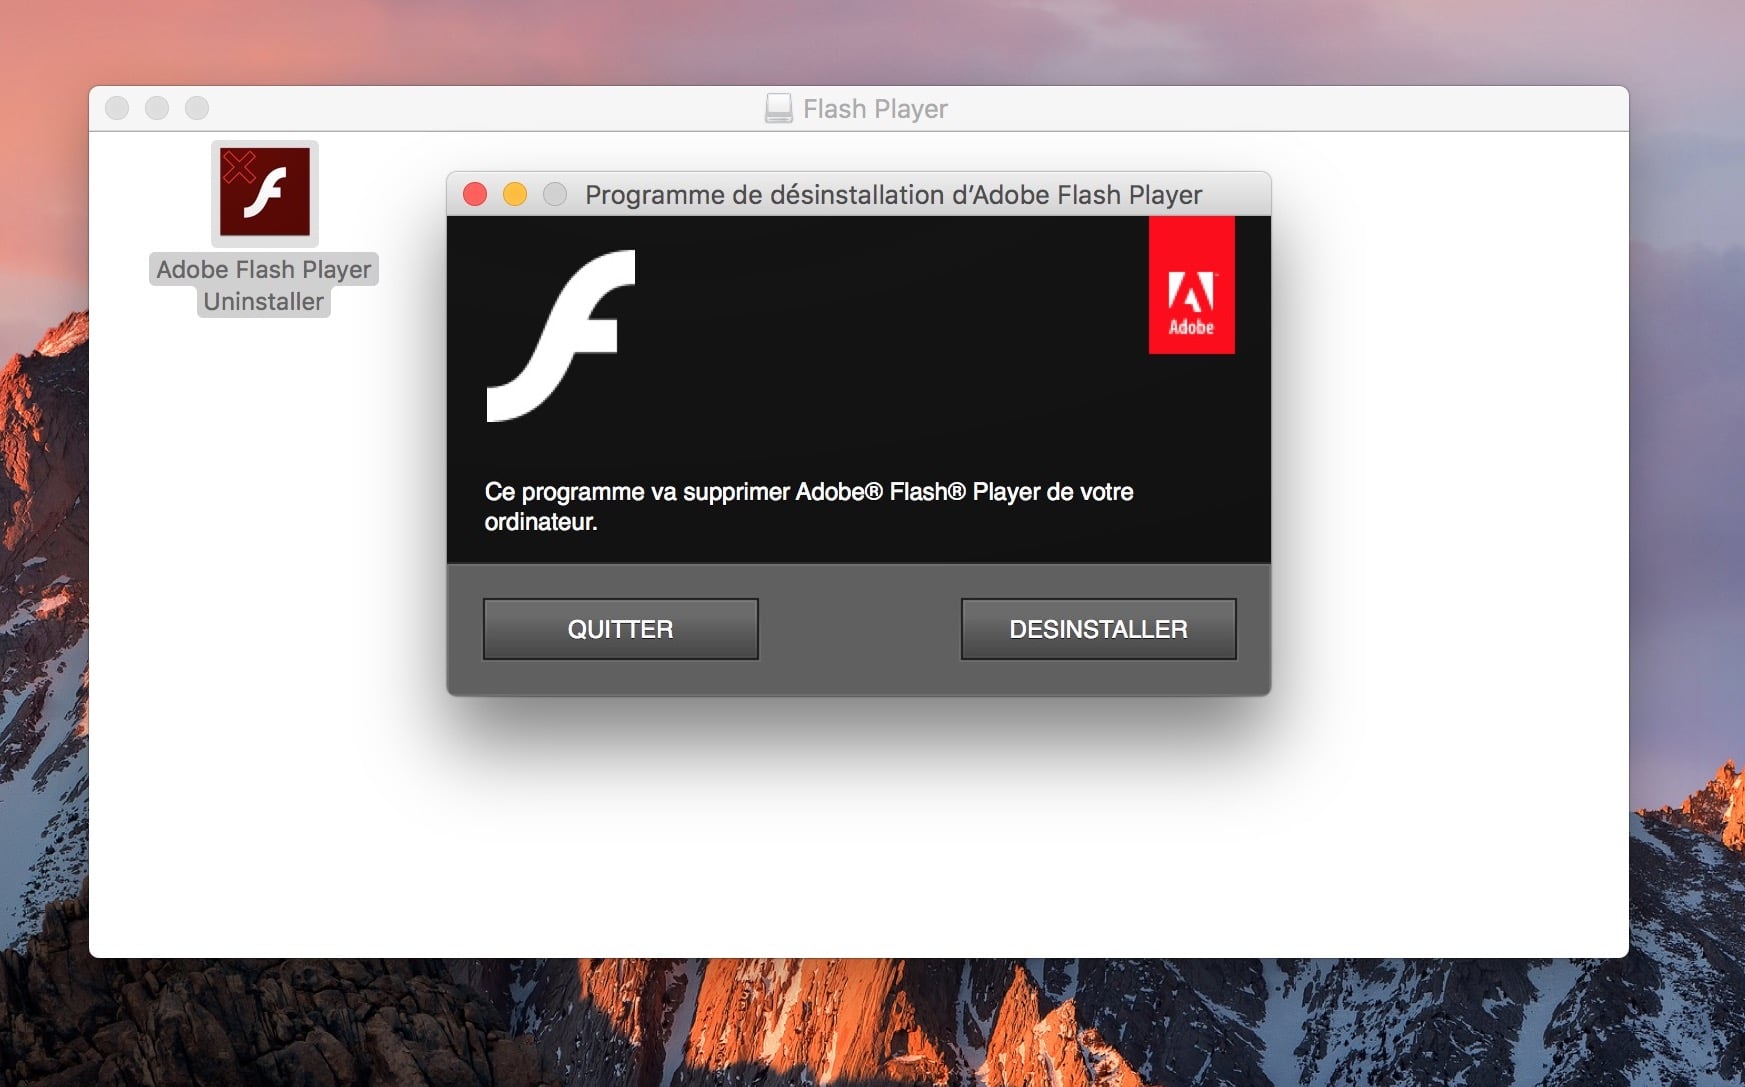 Adobe Flash Player For Mac Os Sierra